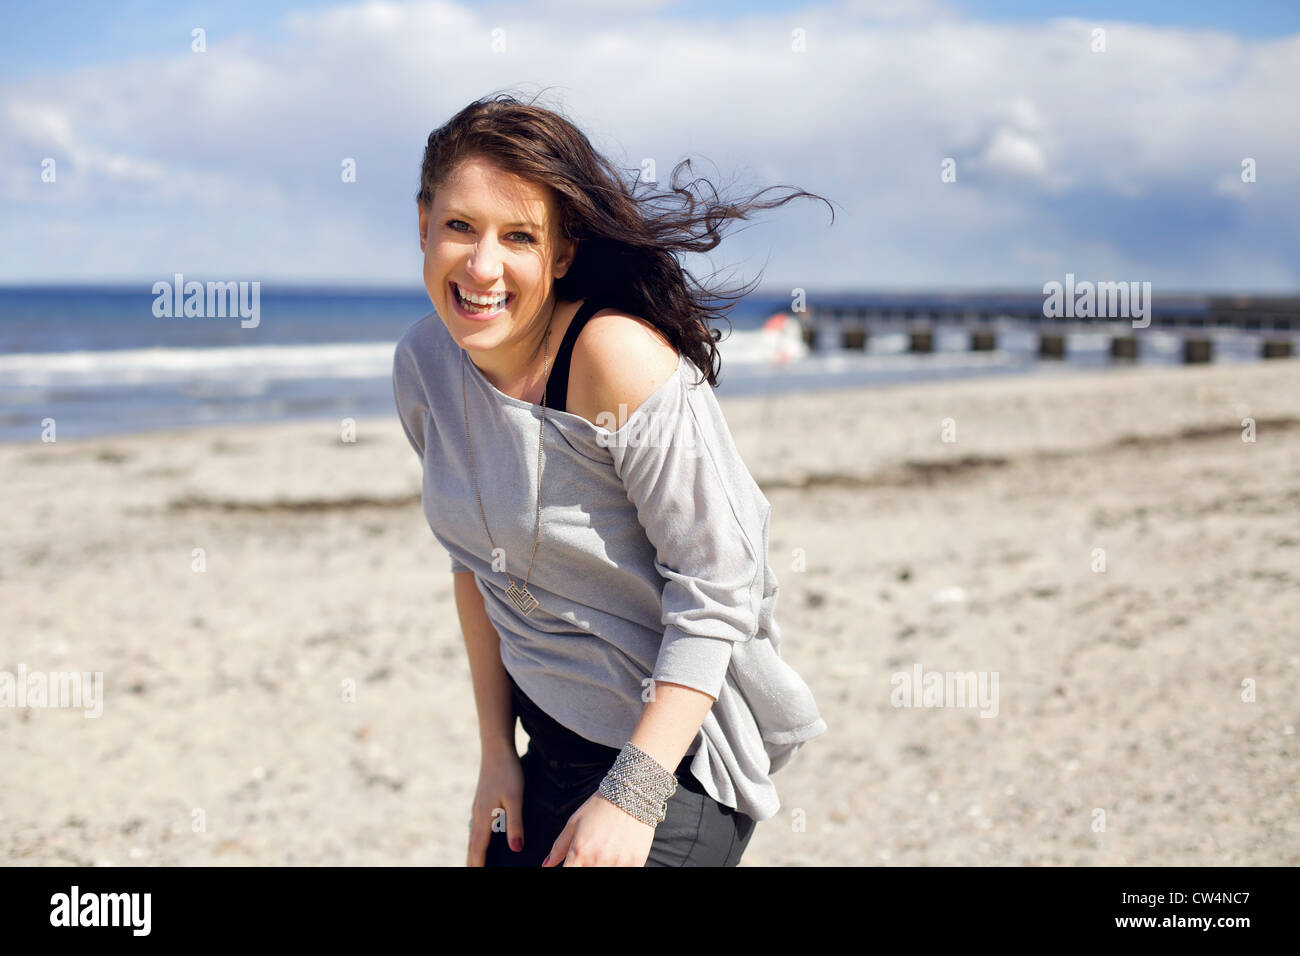 Junge Frau lächelnd und glücklich am Strand gegen den hellen Himmel suchen Stockfoto